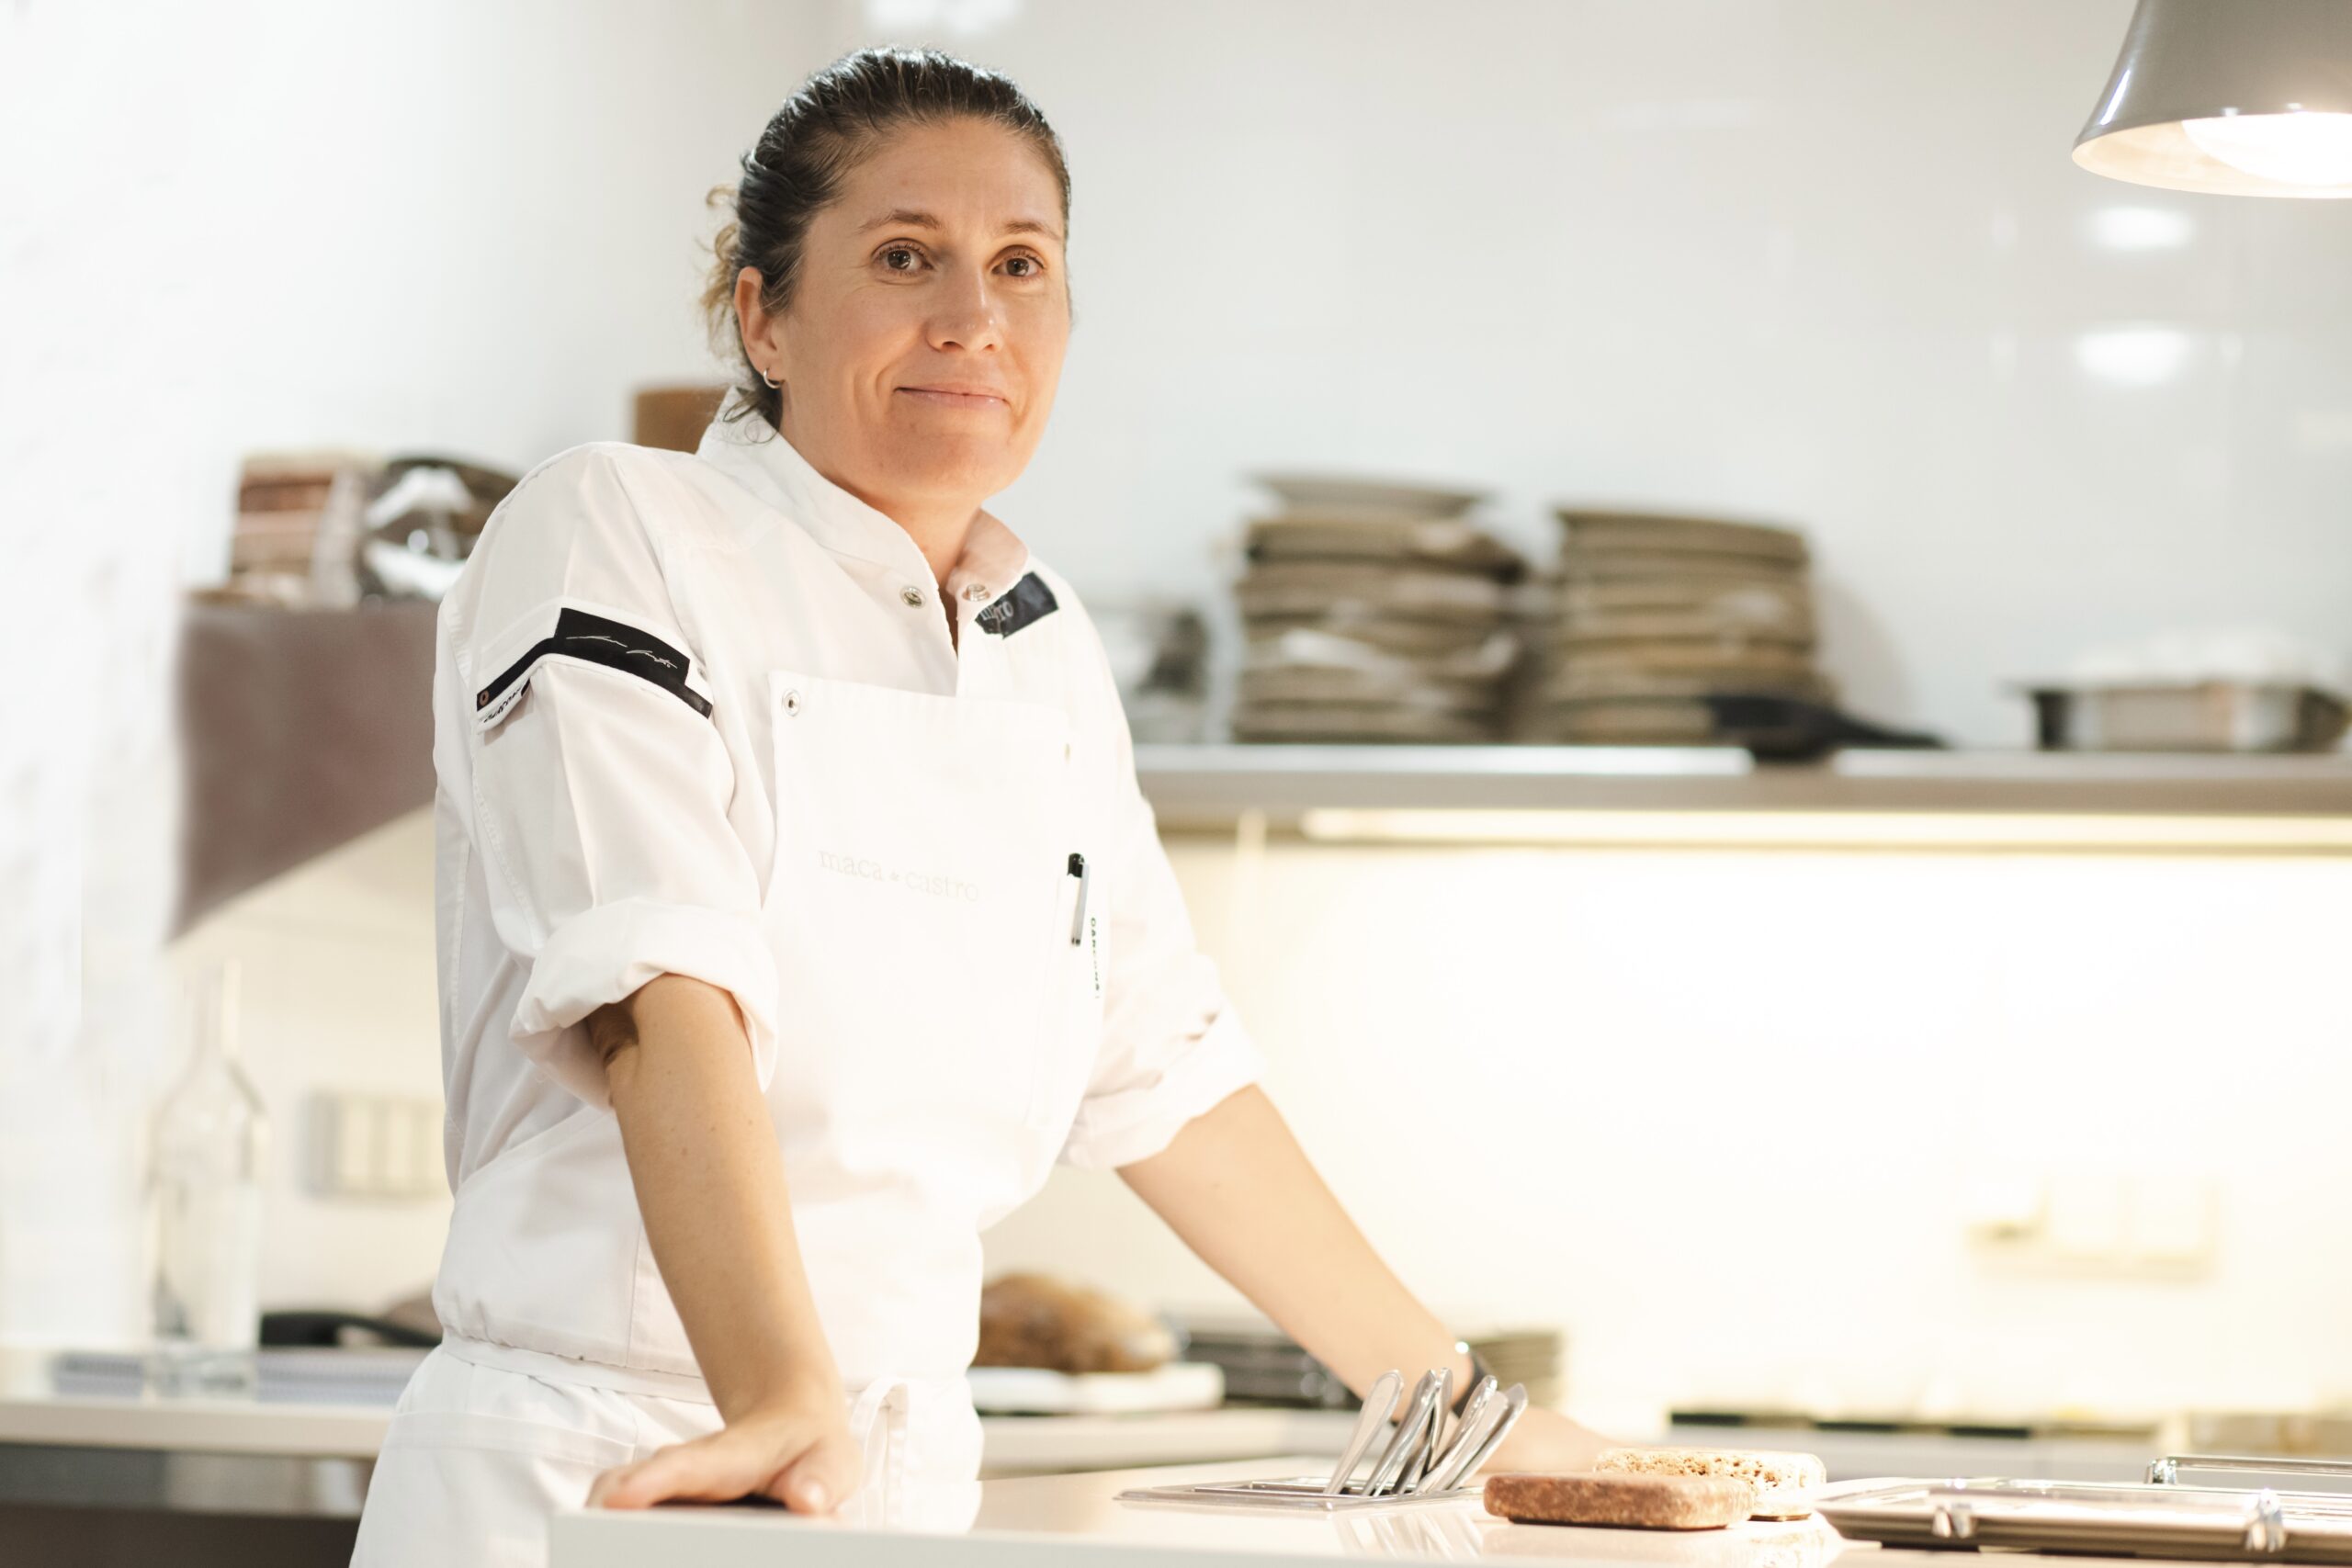 Female chefs on Mallorca